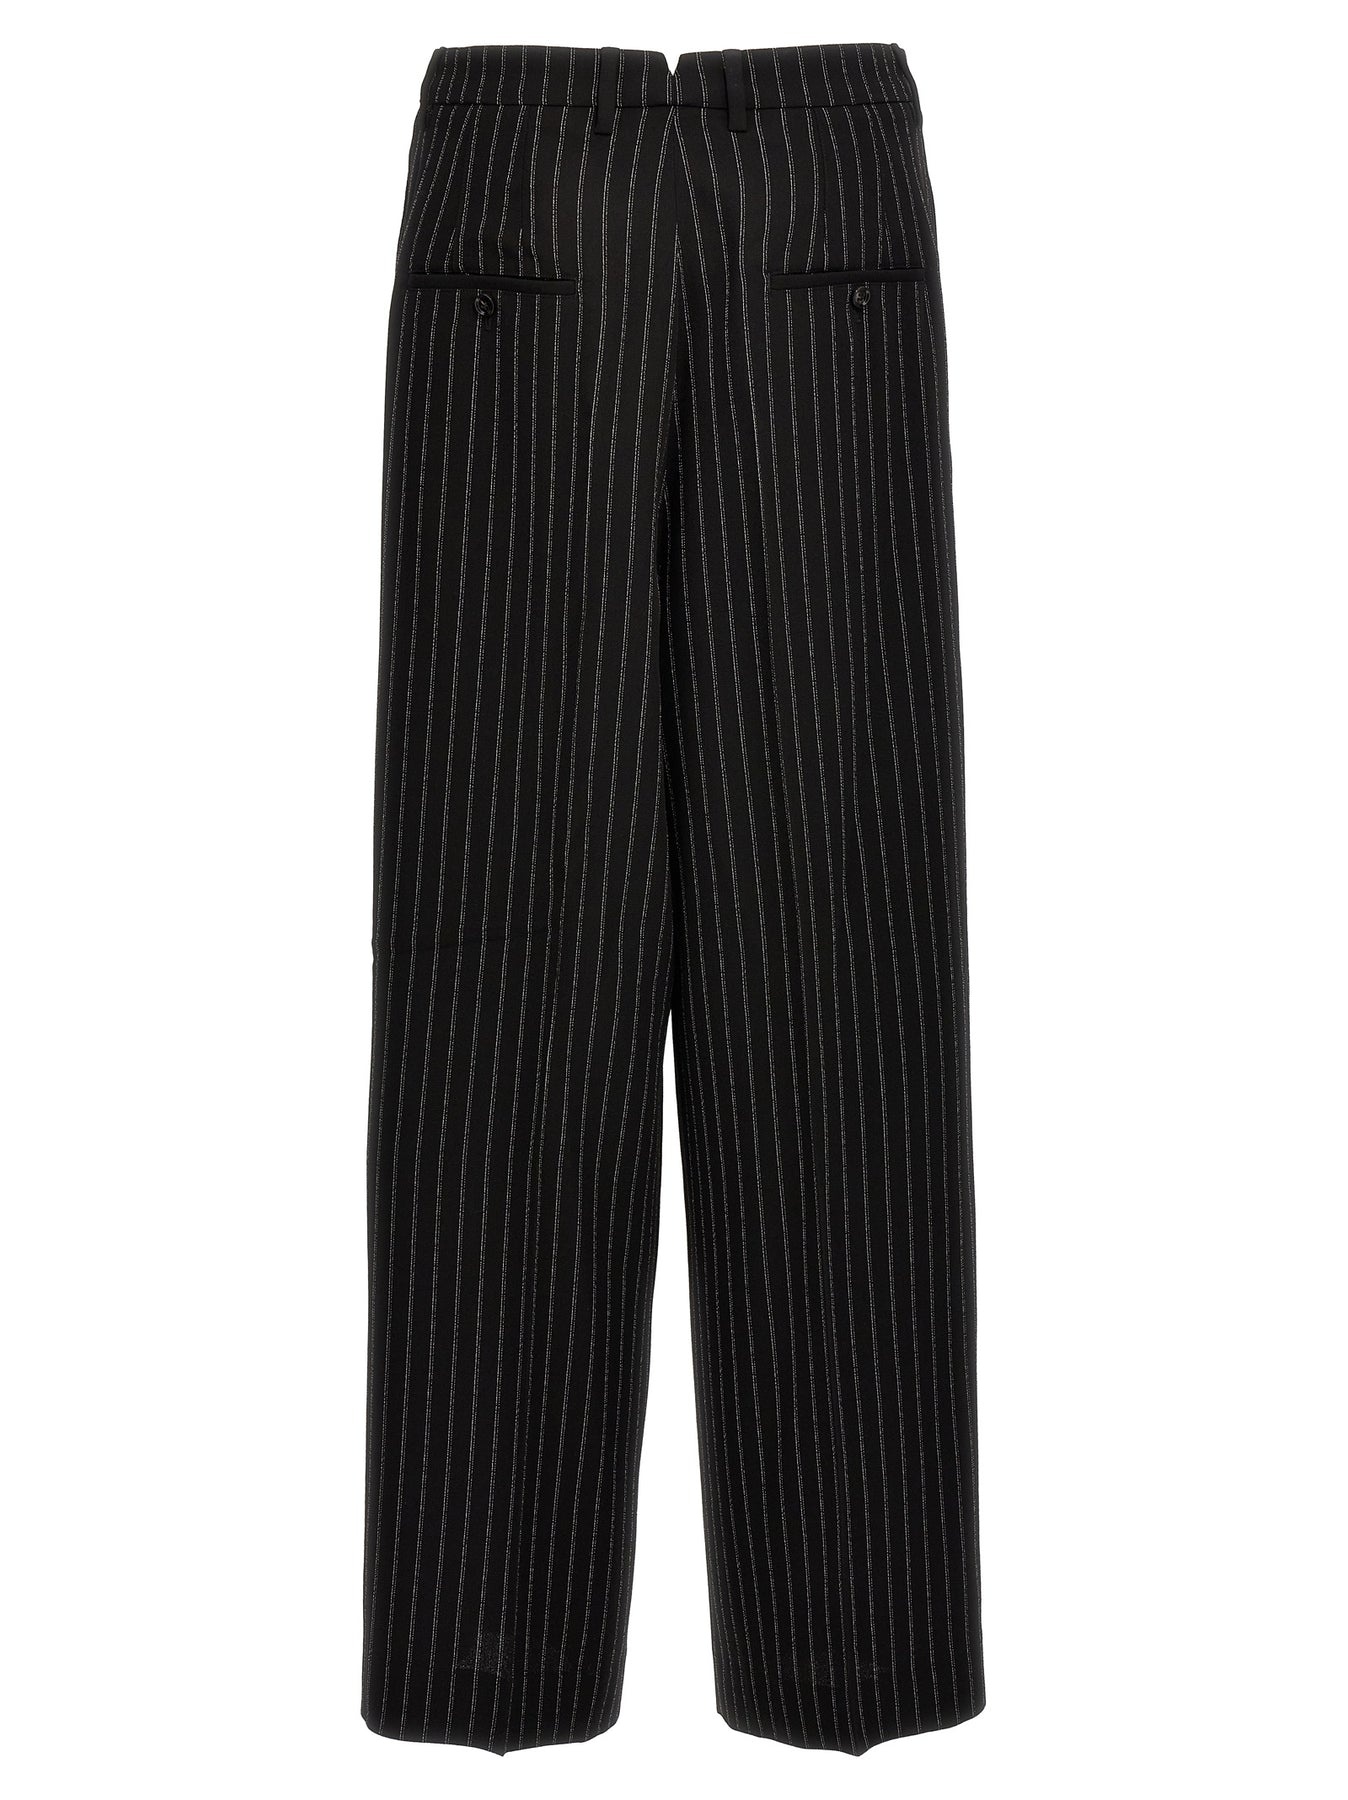 Pinstripe Pants White/Black - 2